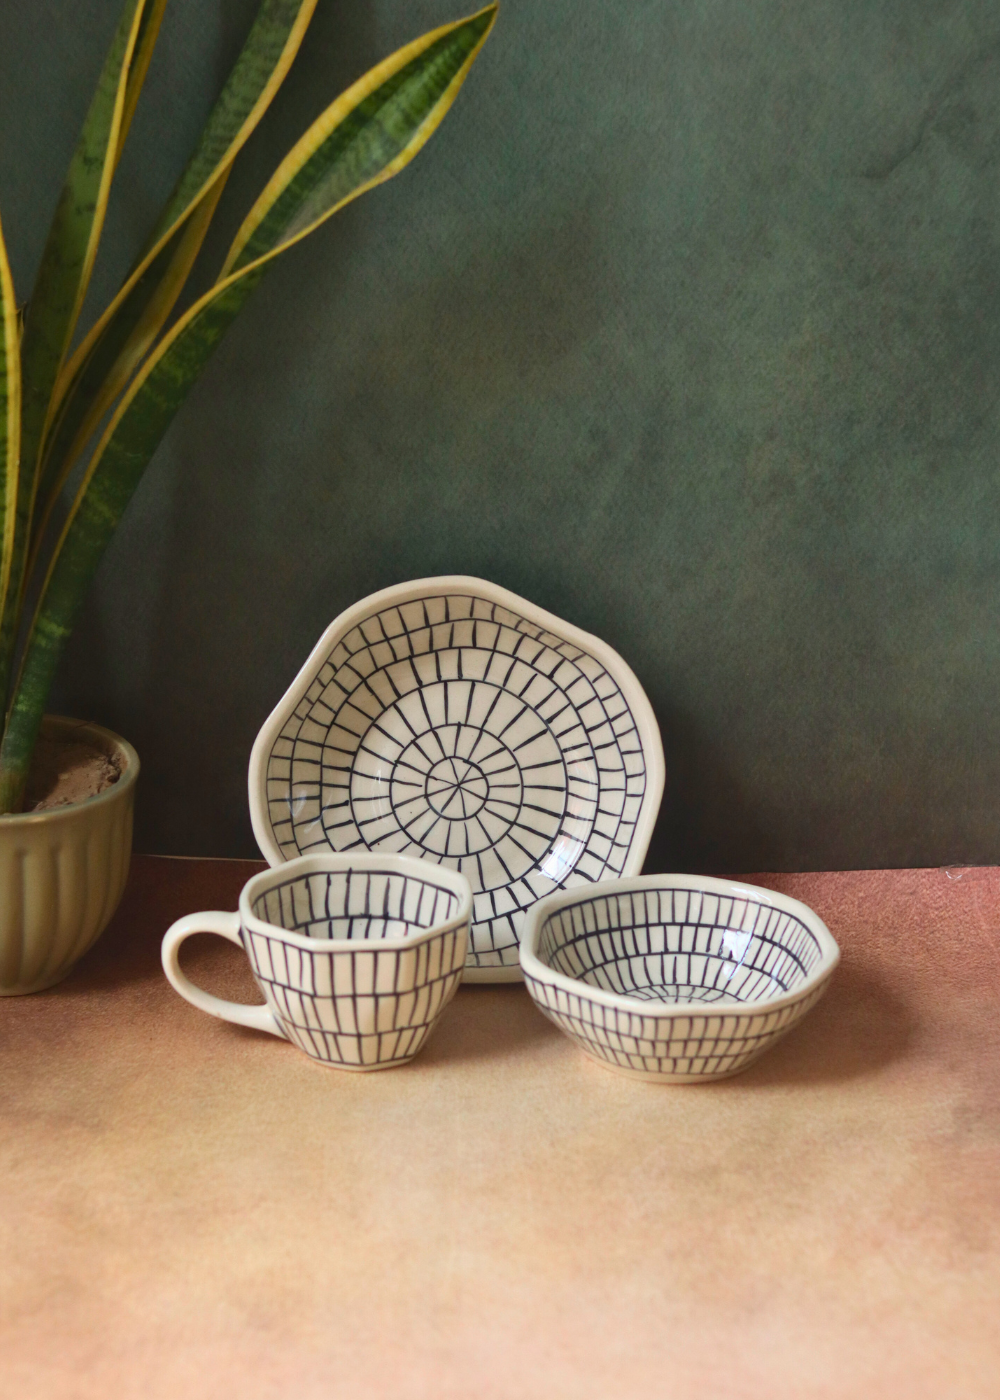 Black & white ceramic bowls & coffee mug